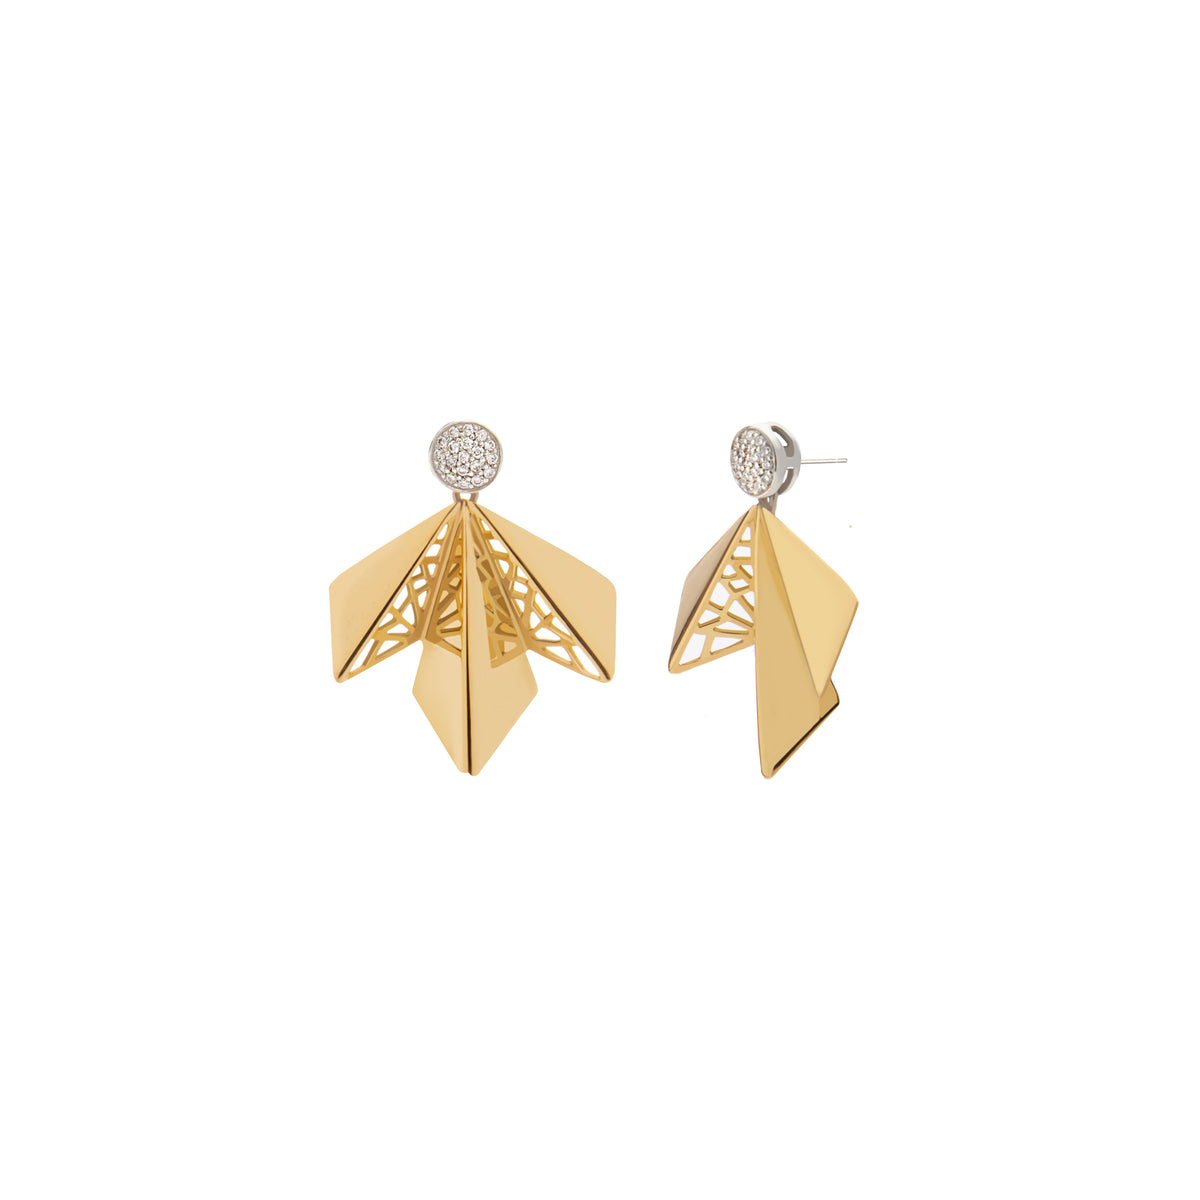 Hand pierced wing diamond earrings